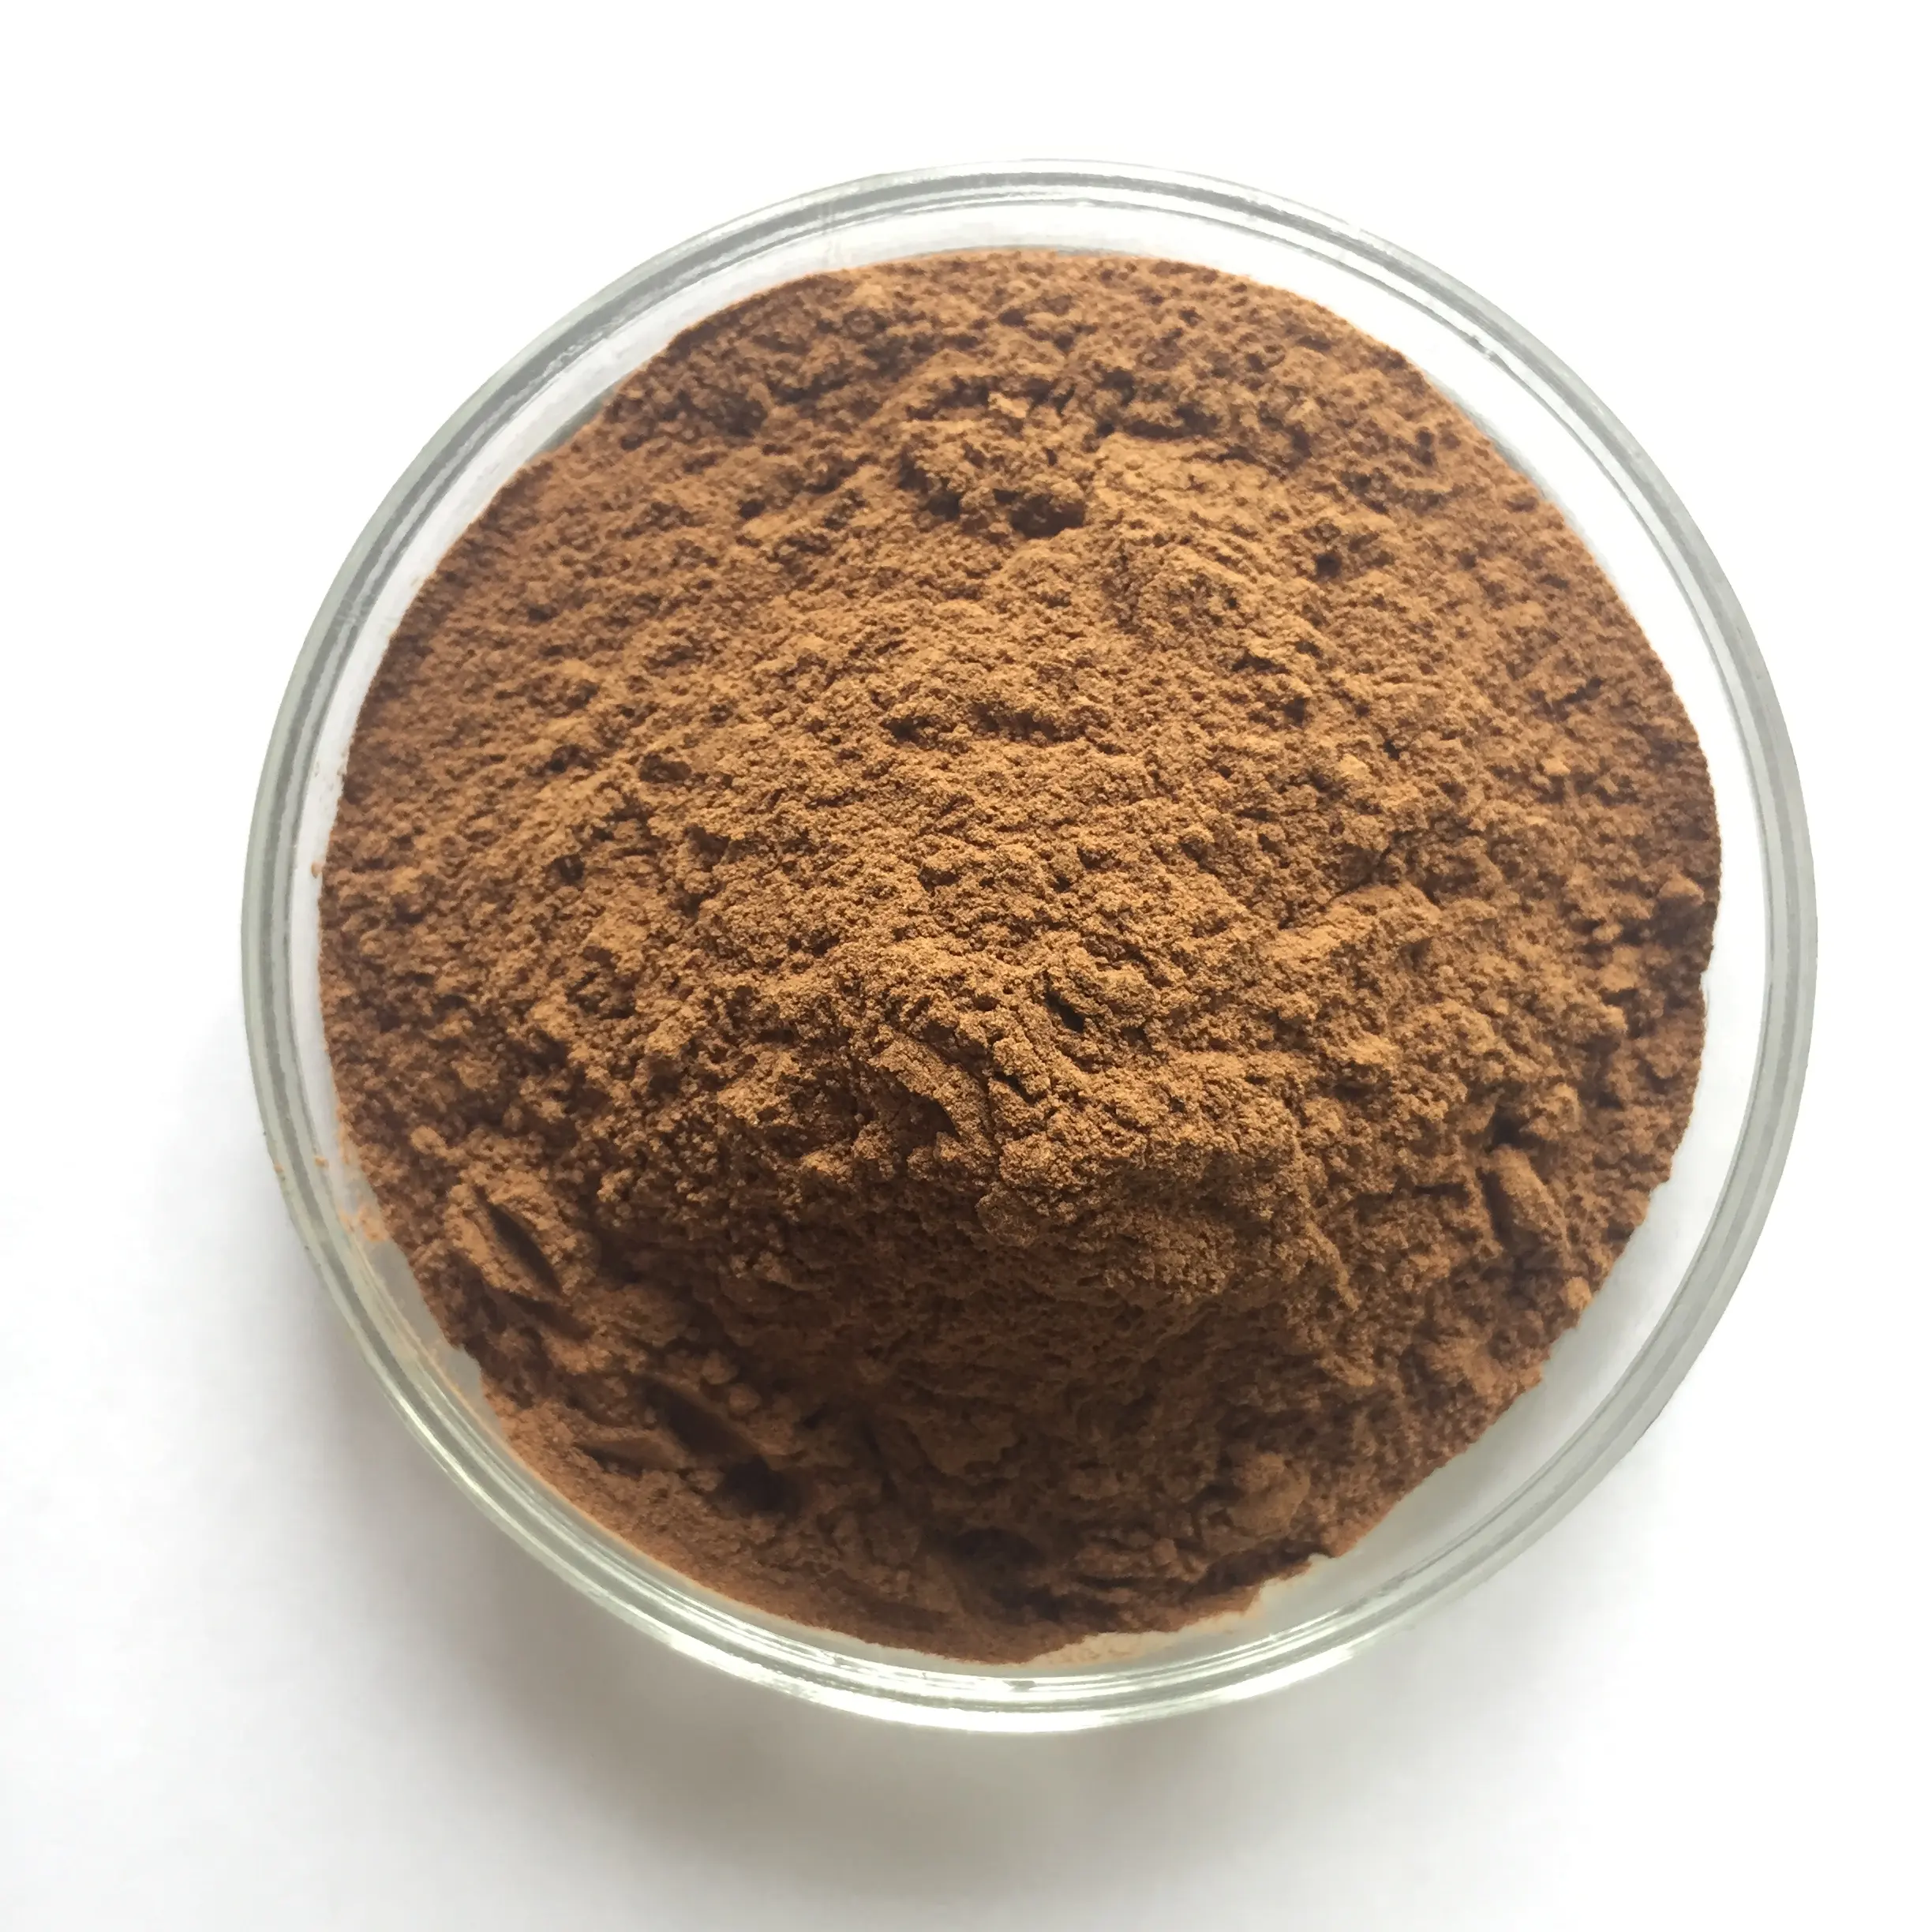 Fornitura all'ingrosso estratto di radice di Cohosh nero in polvere estratto di Cimicifuga Racemosa in polvere estratto di Cohosh nero